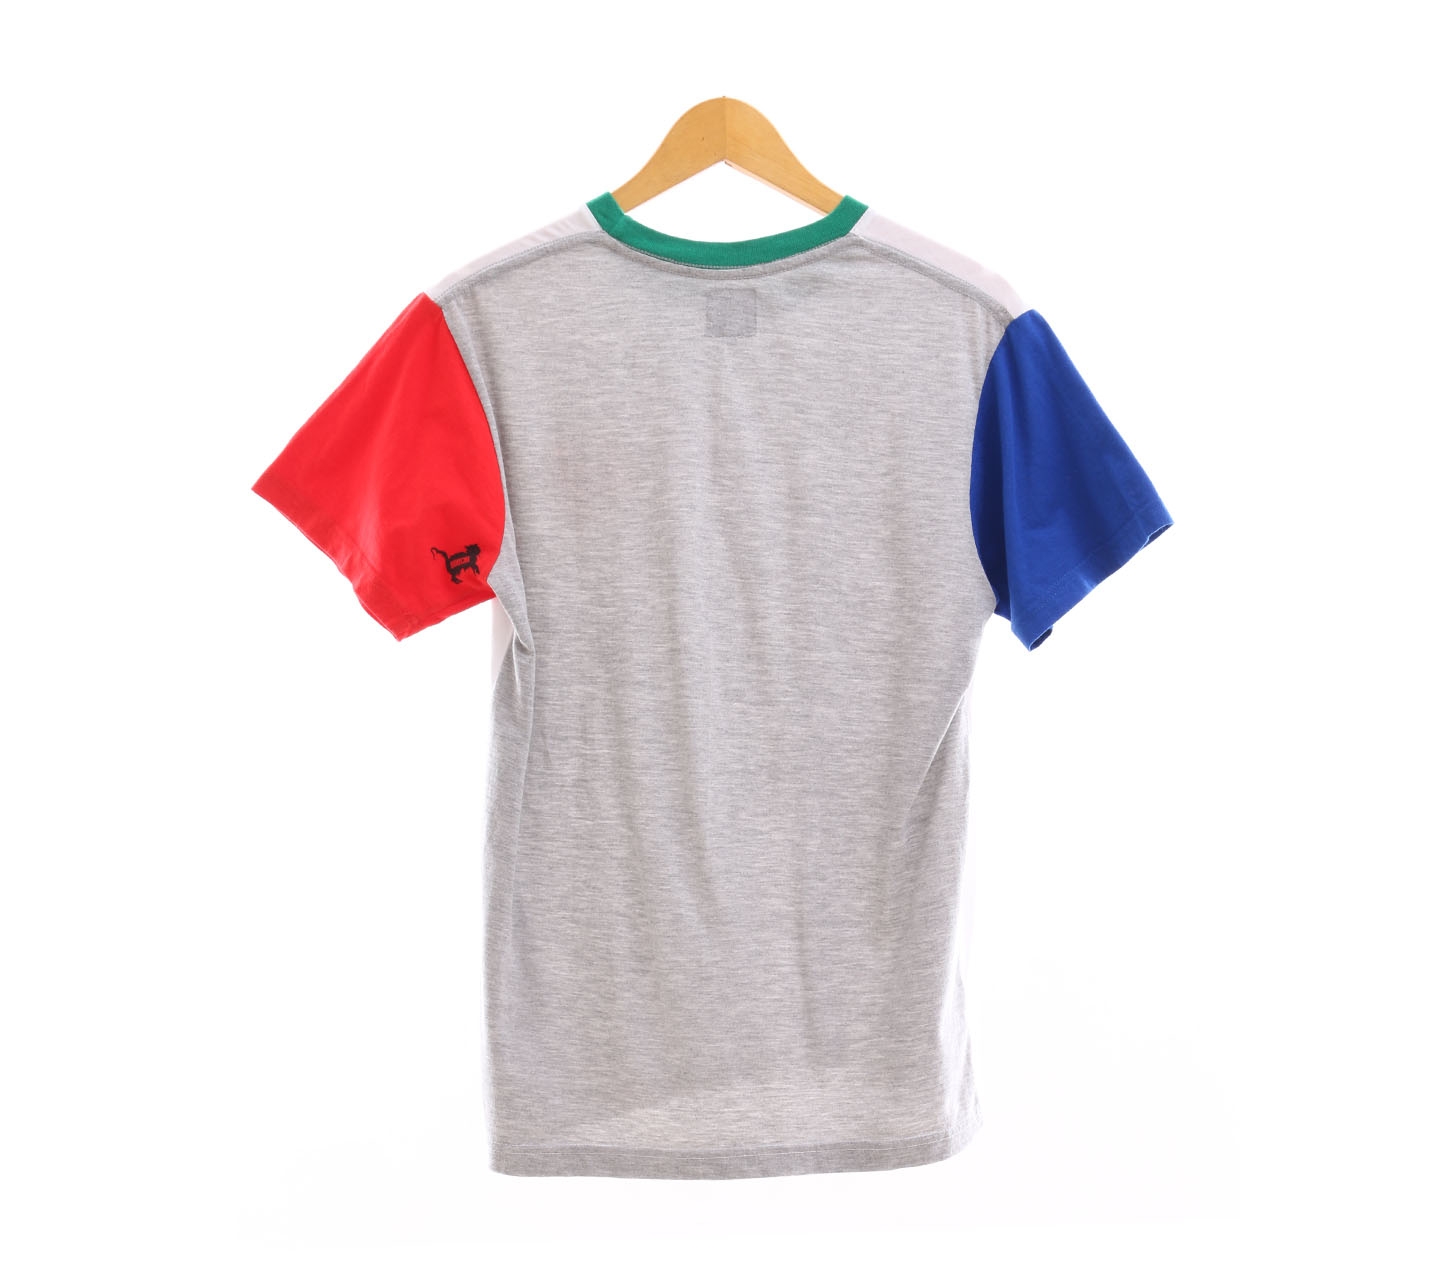 Douche Multicolor T-Shirt